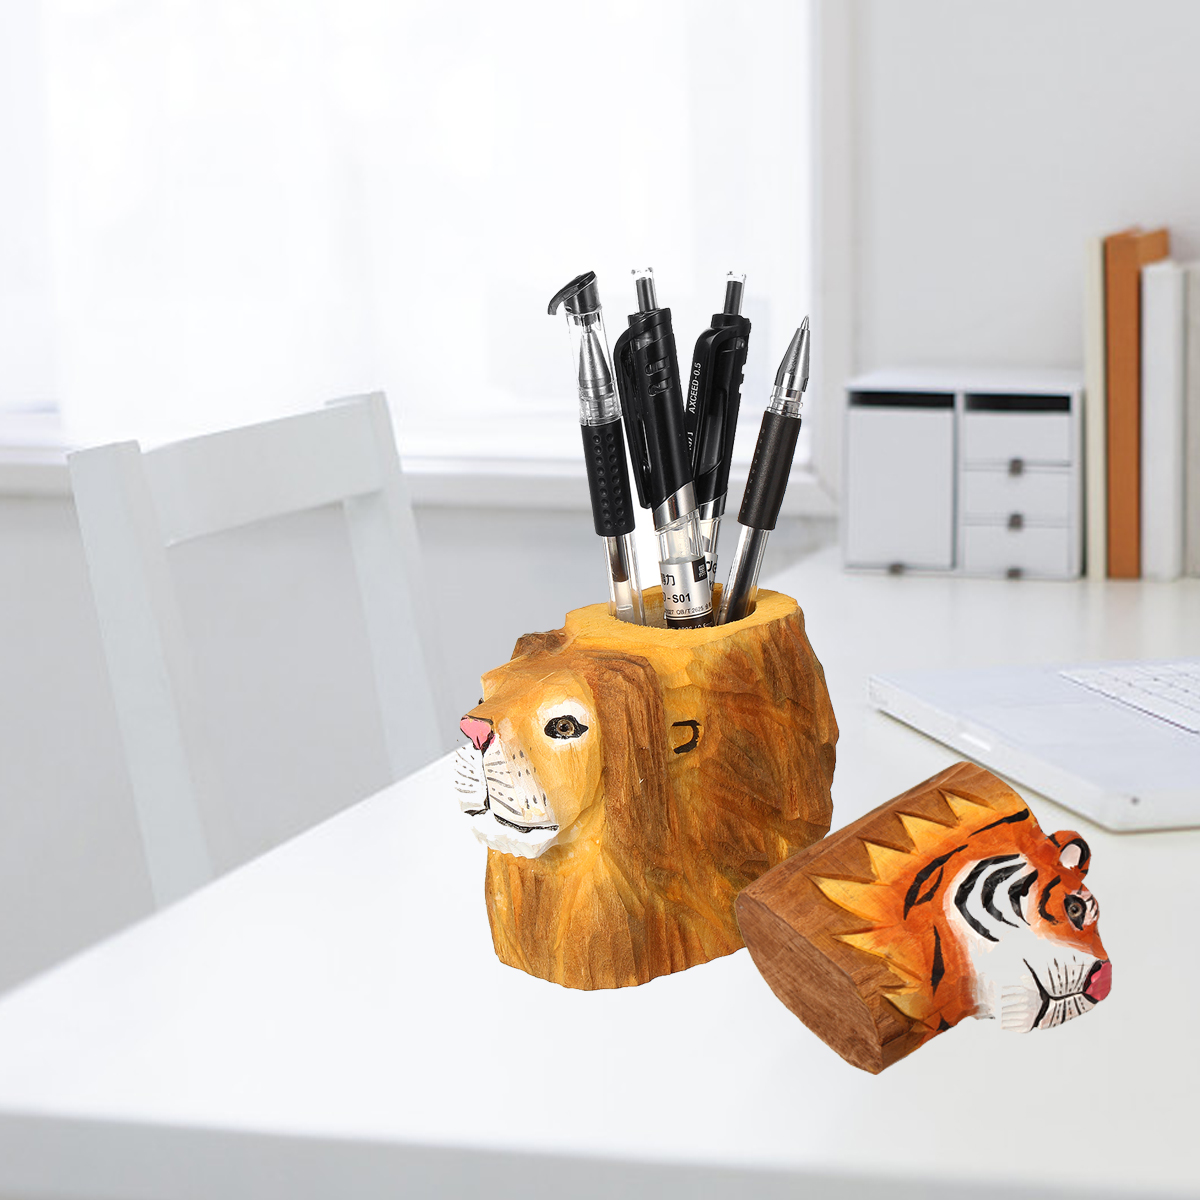 Animal-Types-Pen-Holder-Creative-Hand-Carved-Wooden-Pen-Holder-Lion-Tiger-Owl-Dog-Pattern-Pen-Organi-1747554-5